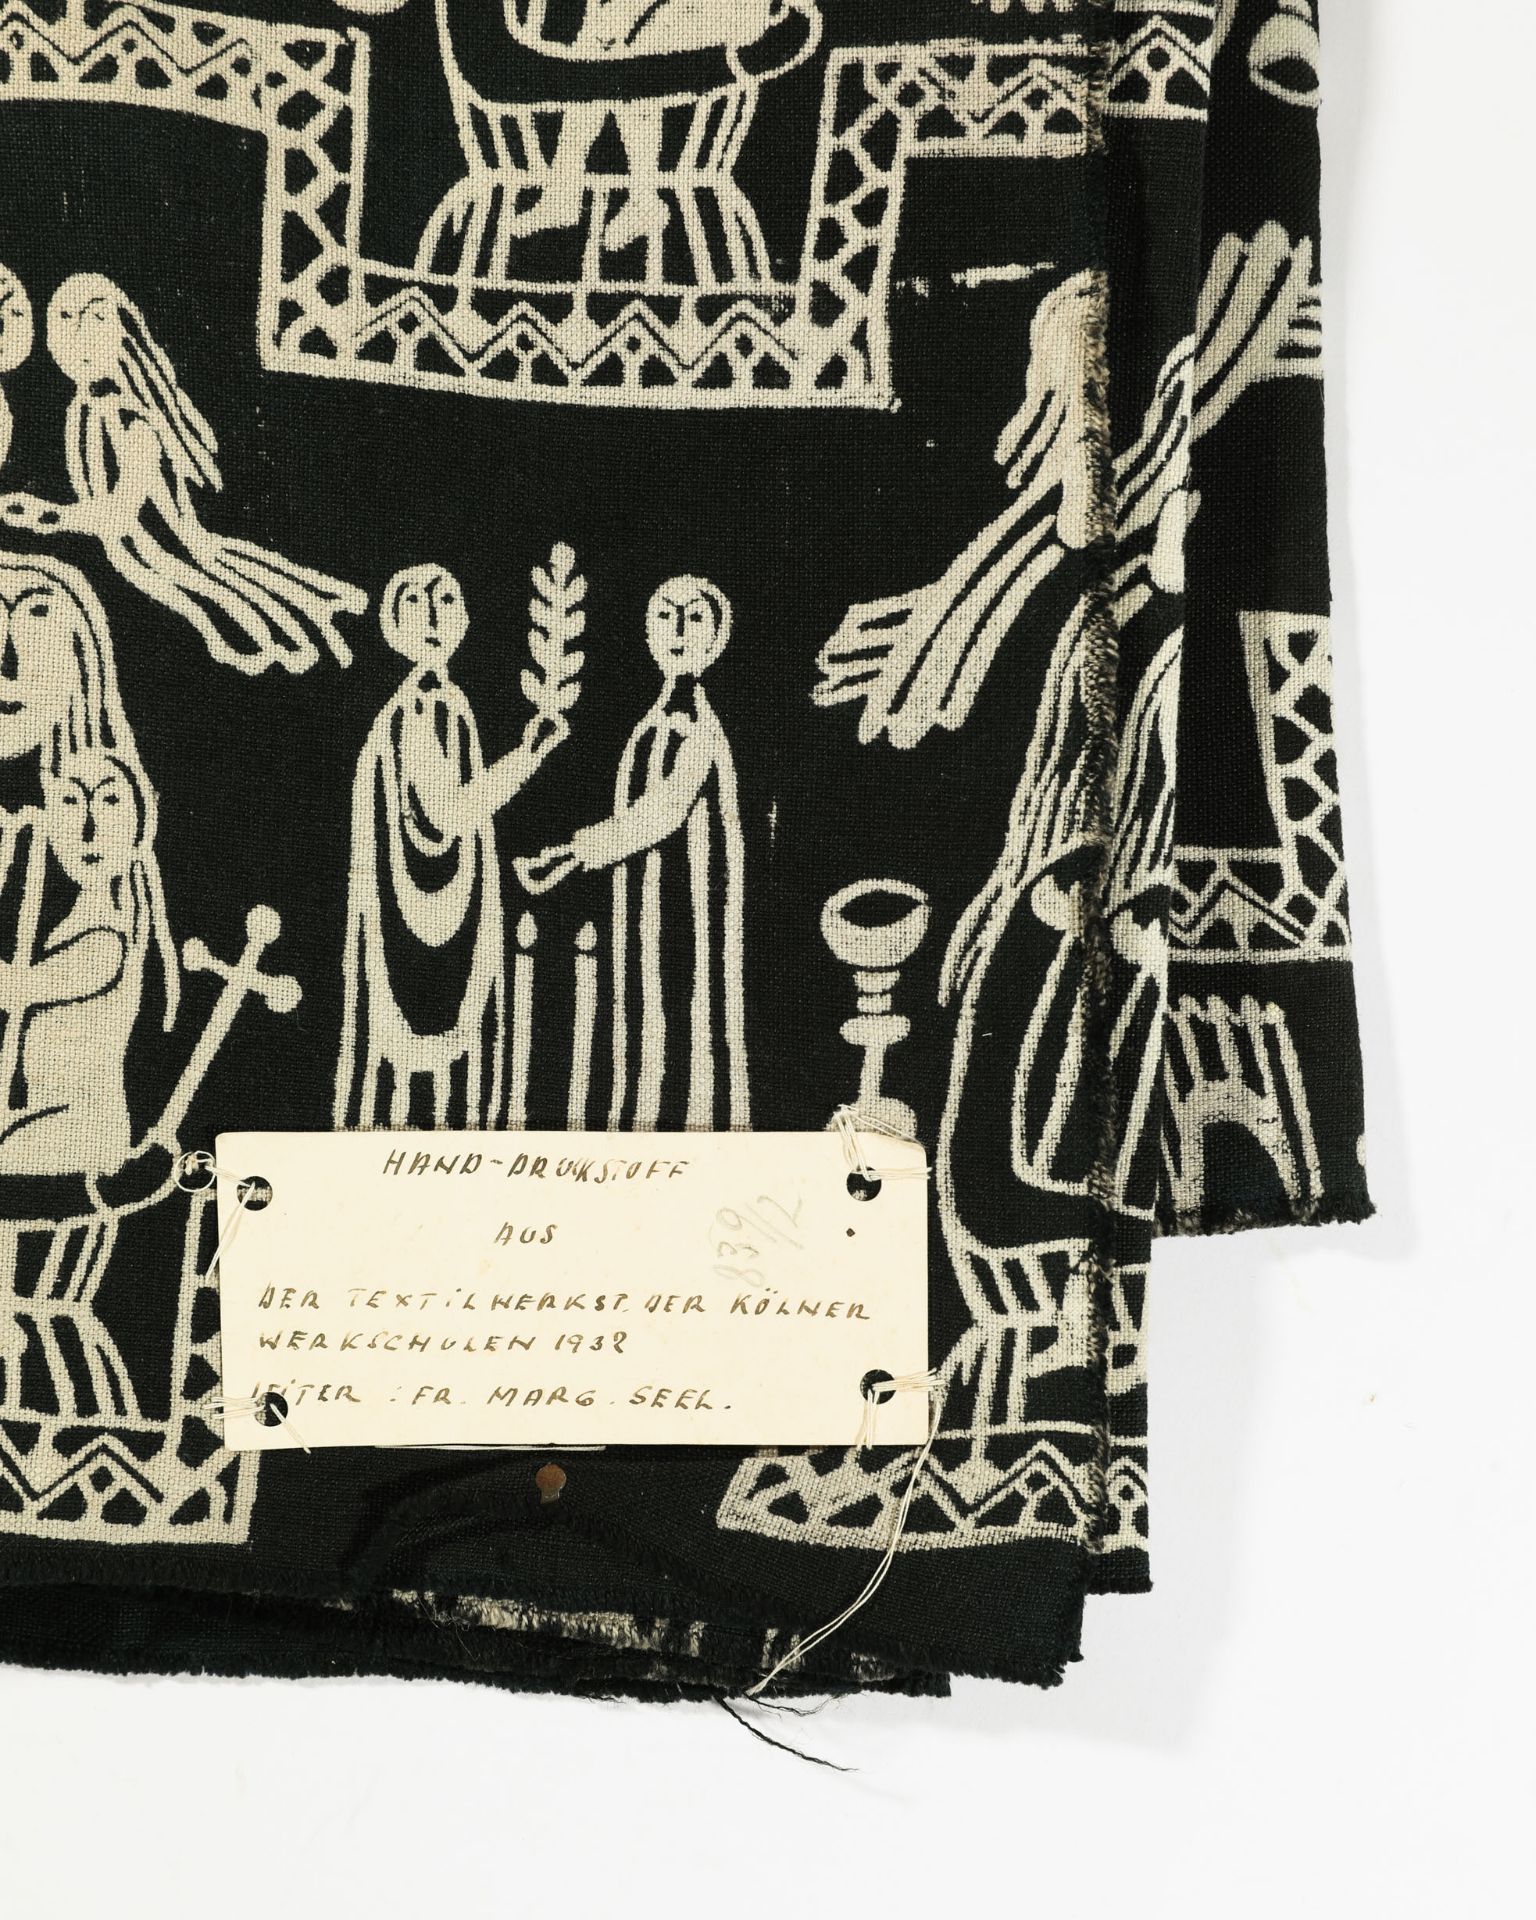 Hand-printed fabric from the textile workshop of Kölner Werkschulen - Bild 5 aus 5